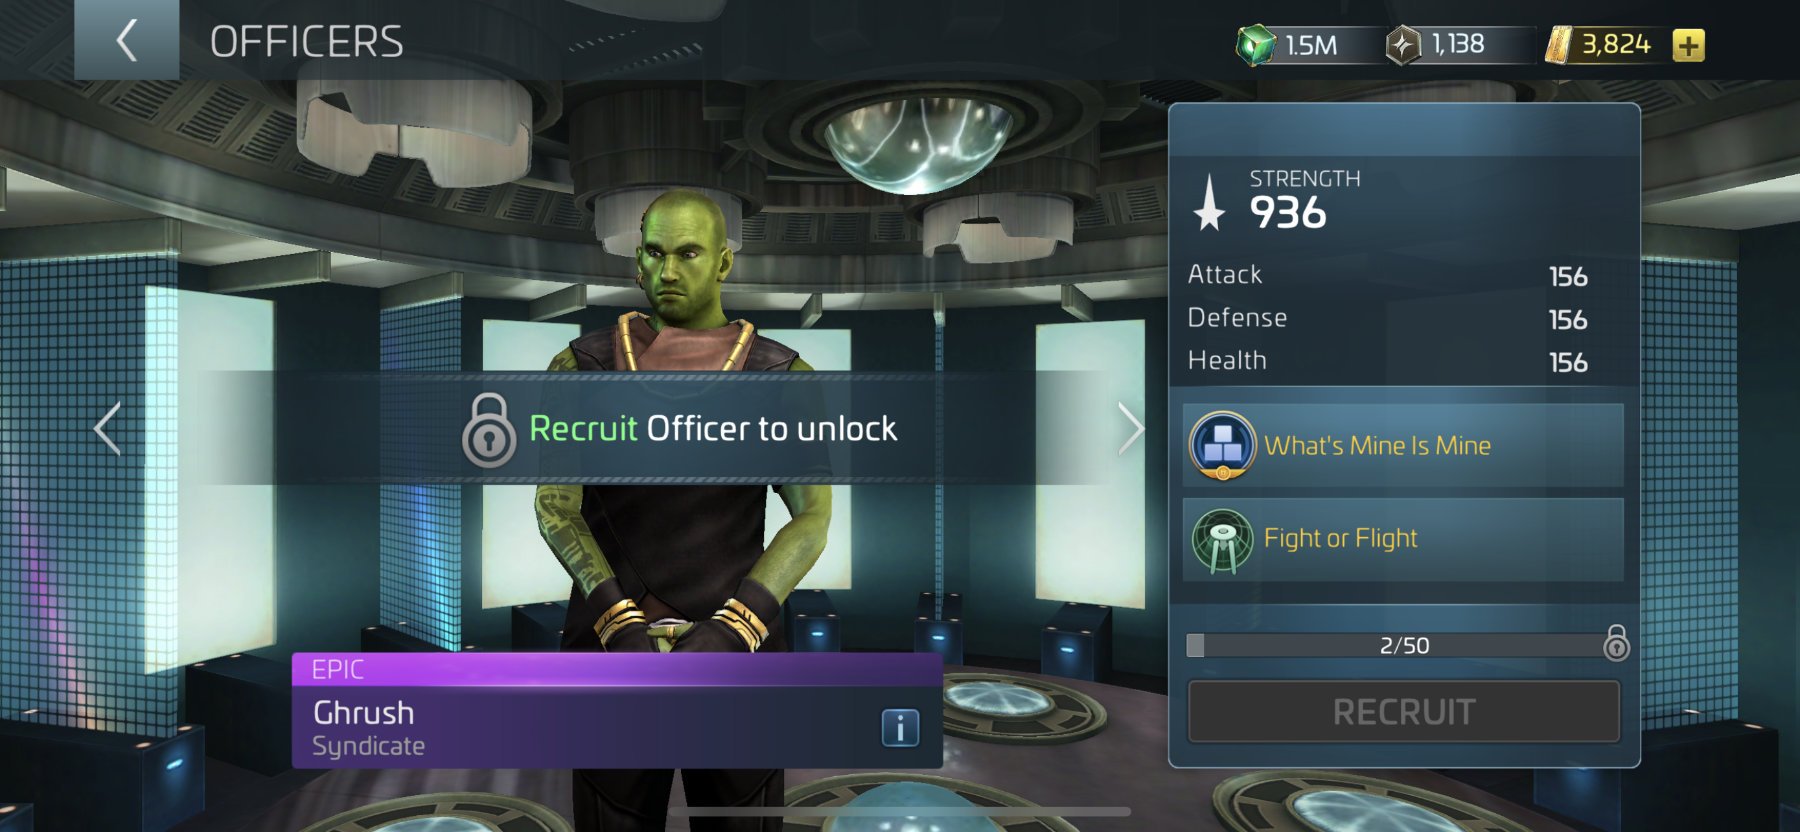 Star Trek Fleet Command Officer Ghrush